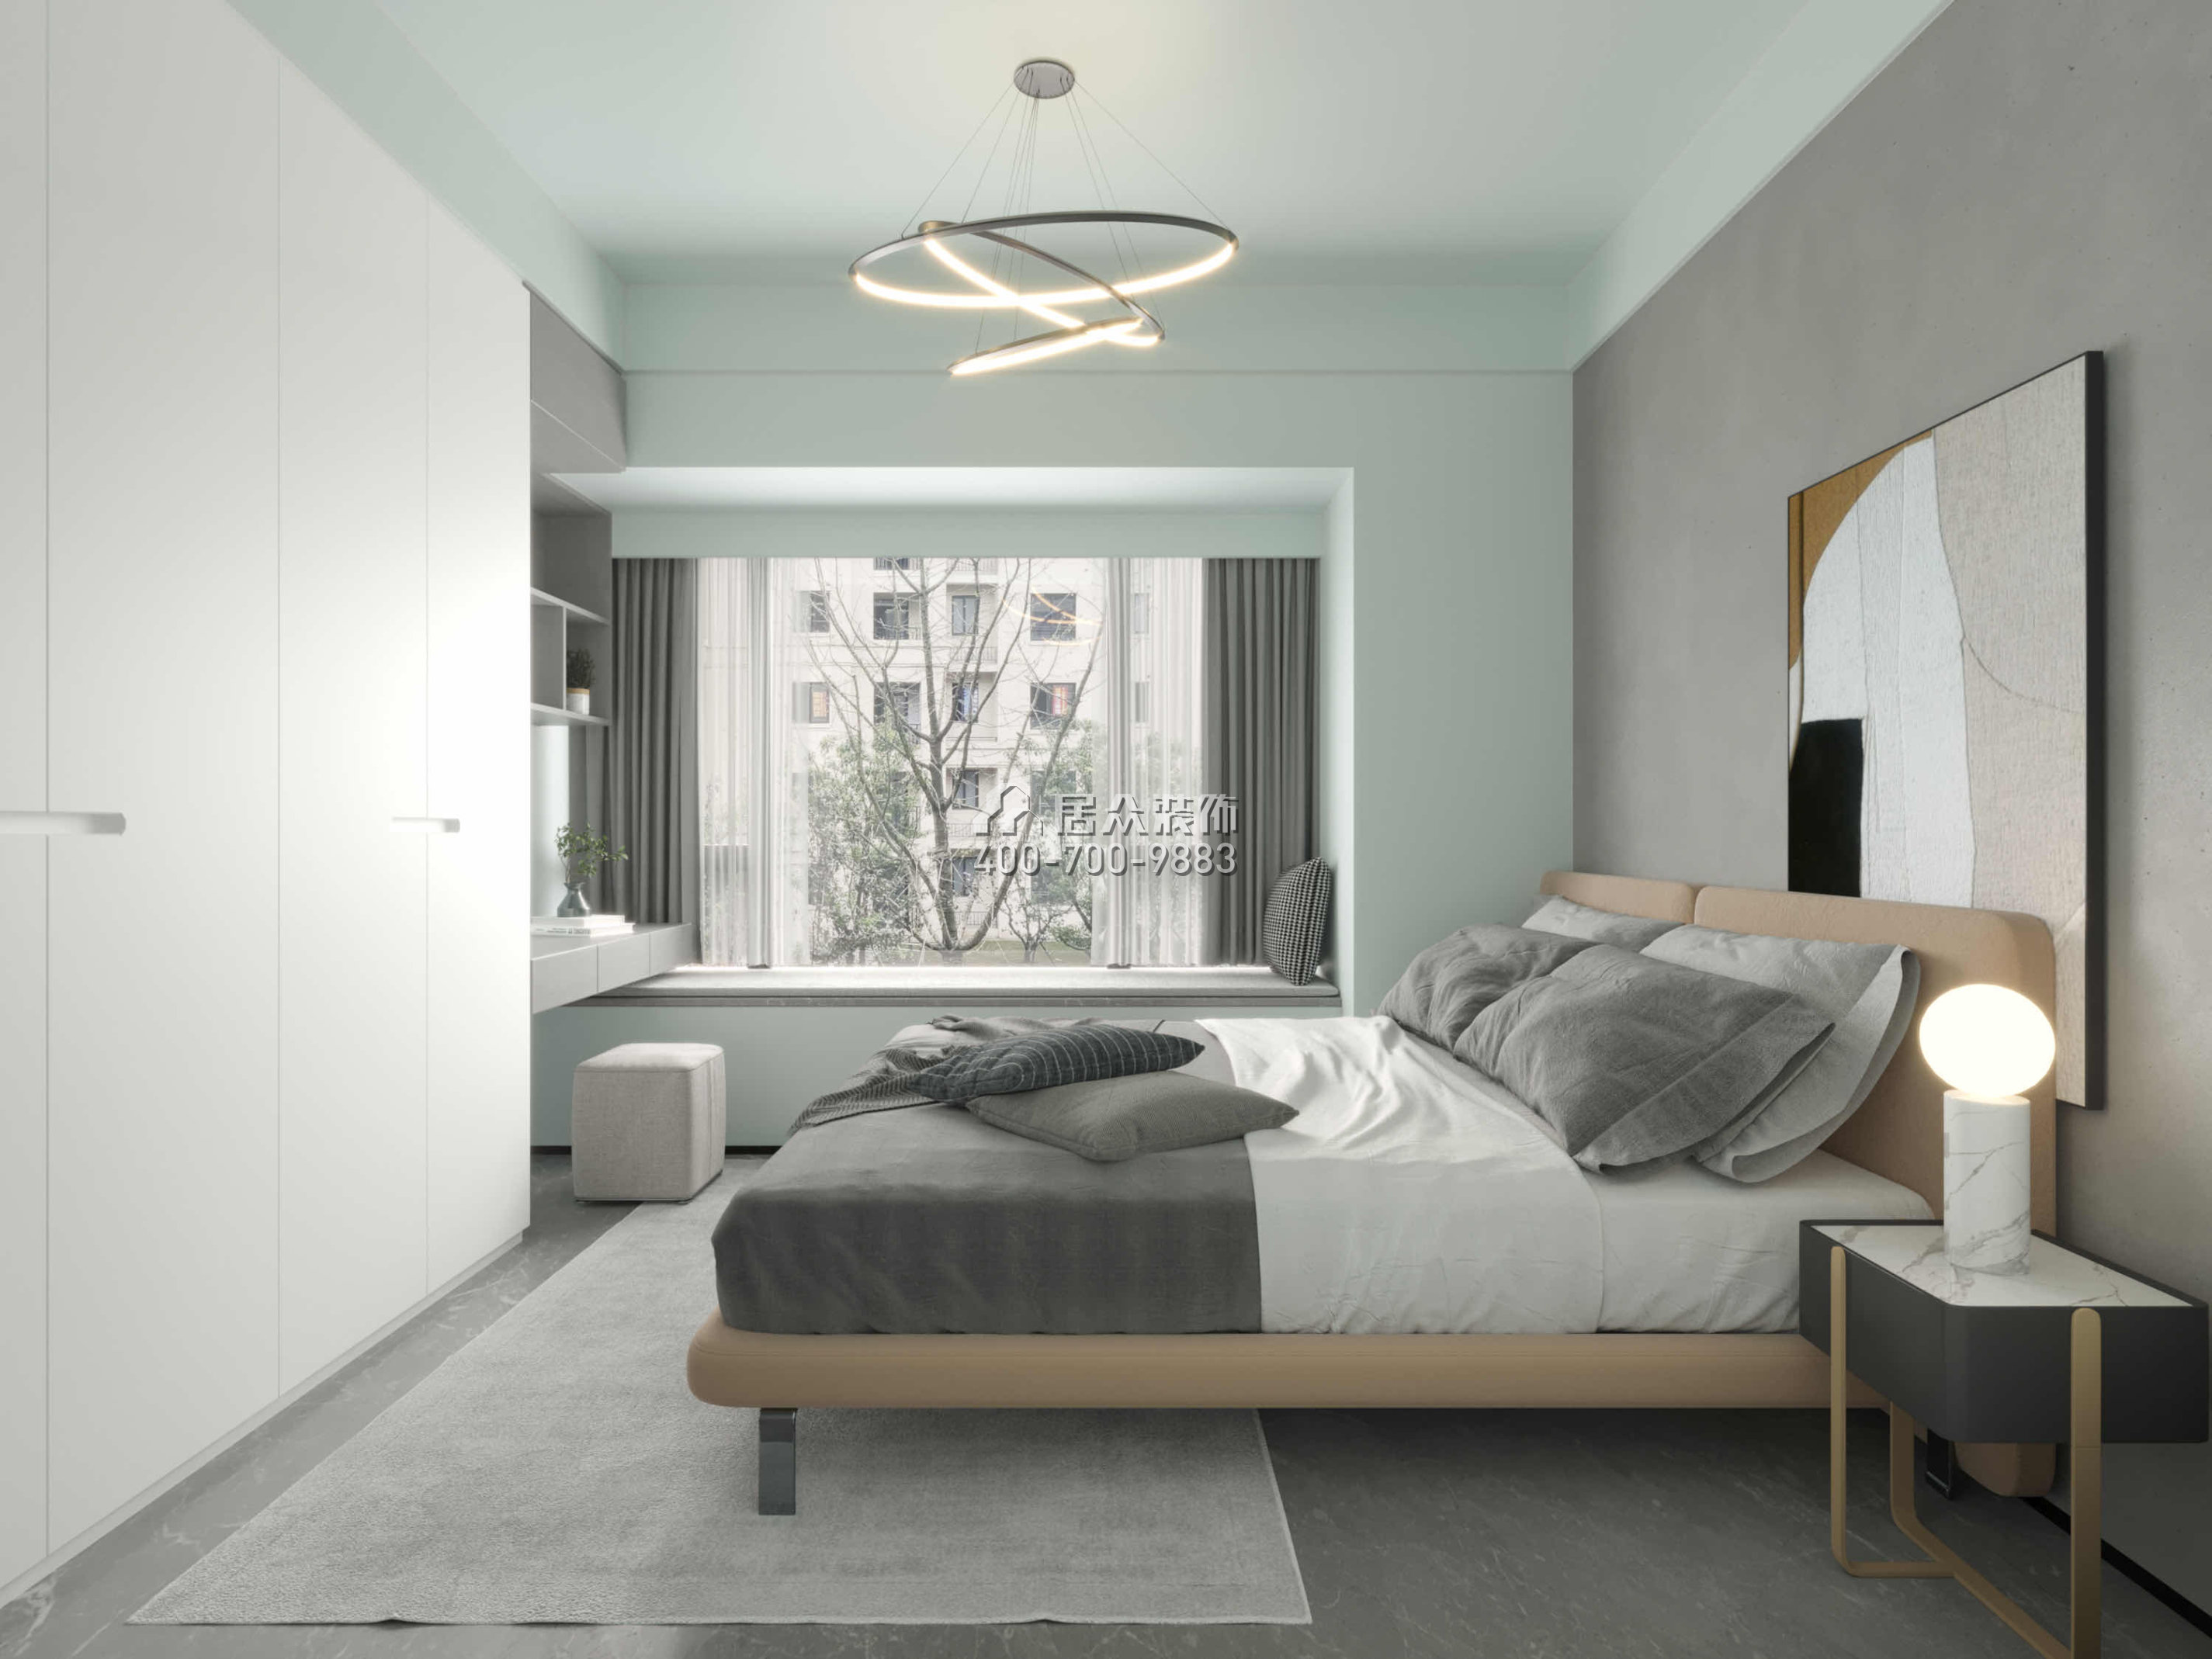 京基·御景峯110平方米现代简约风格平层户型卧室装修效果图